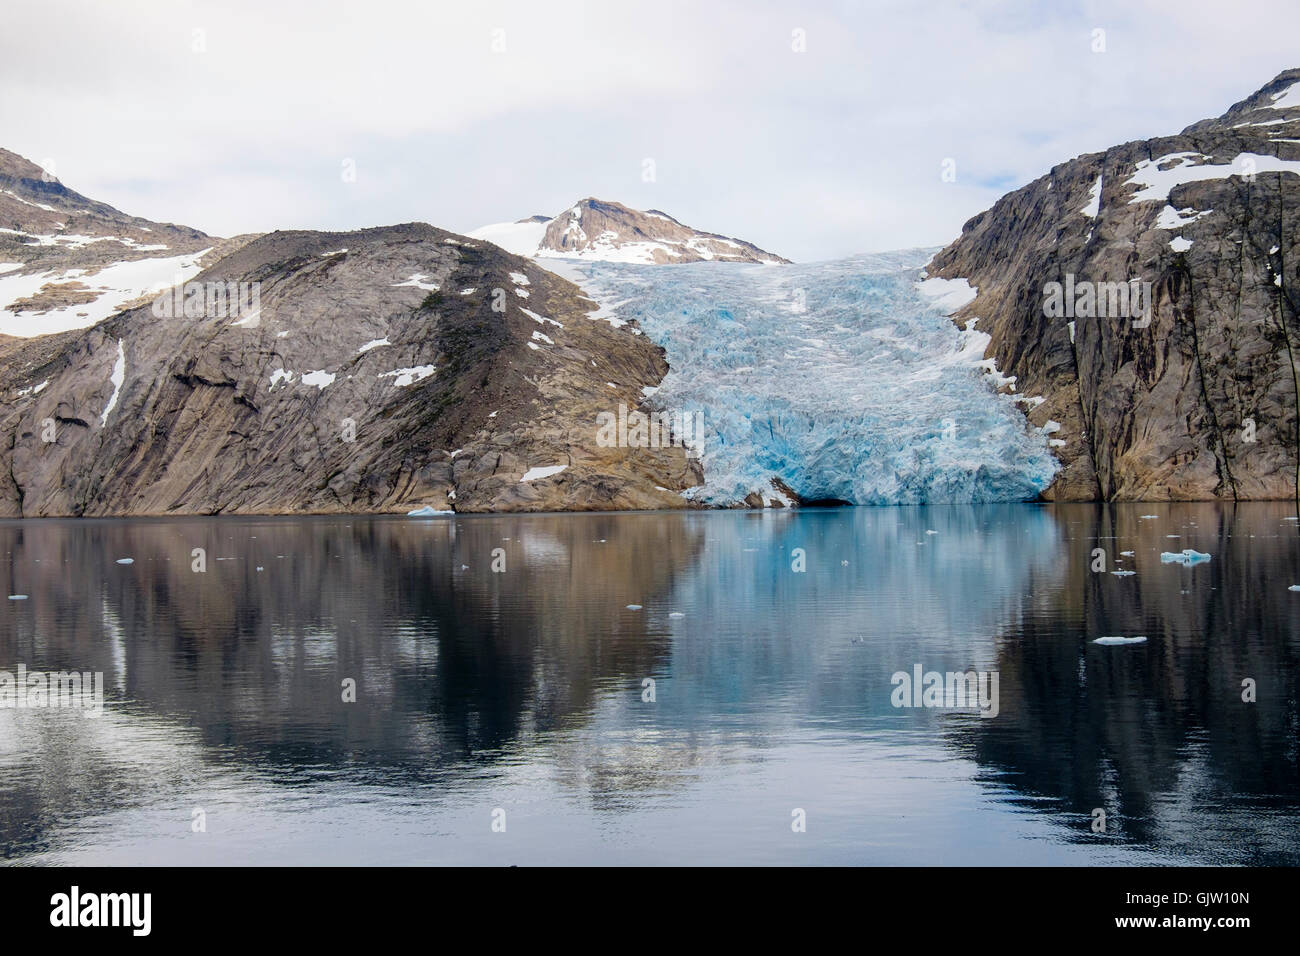 La tête d'un vêlage des glaciers en Prince Christian Sound / Prins chrétiens Sund en été. Kujalleq, sud du Groenland Banque D'Images